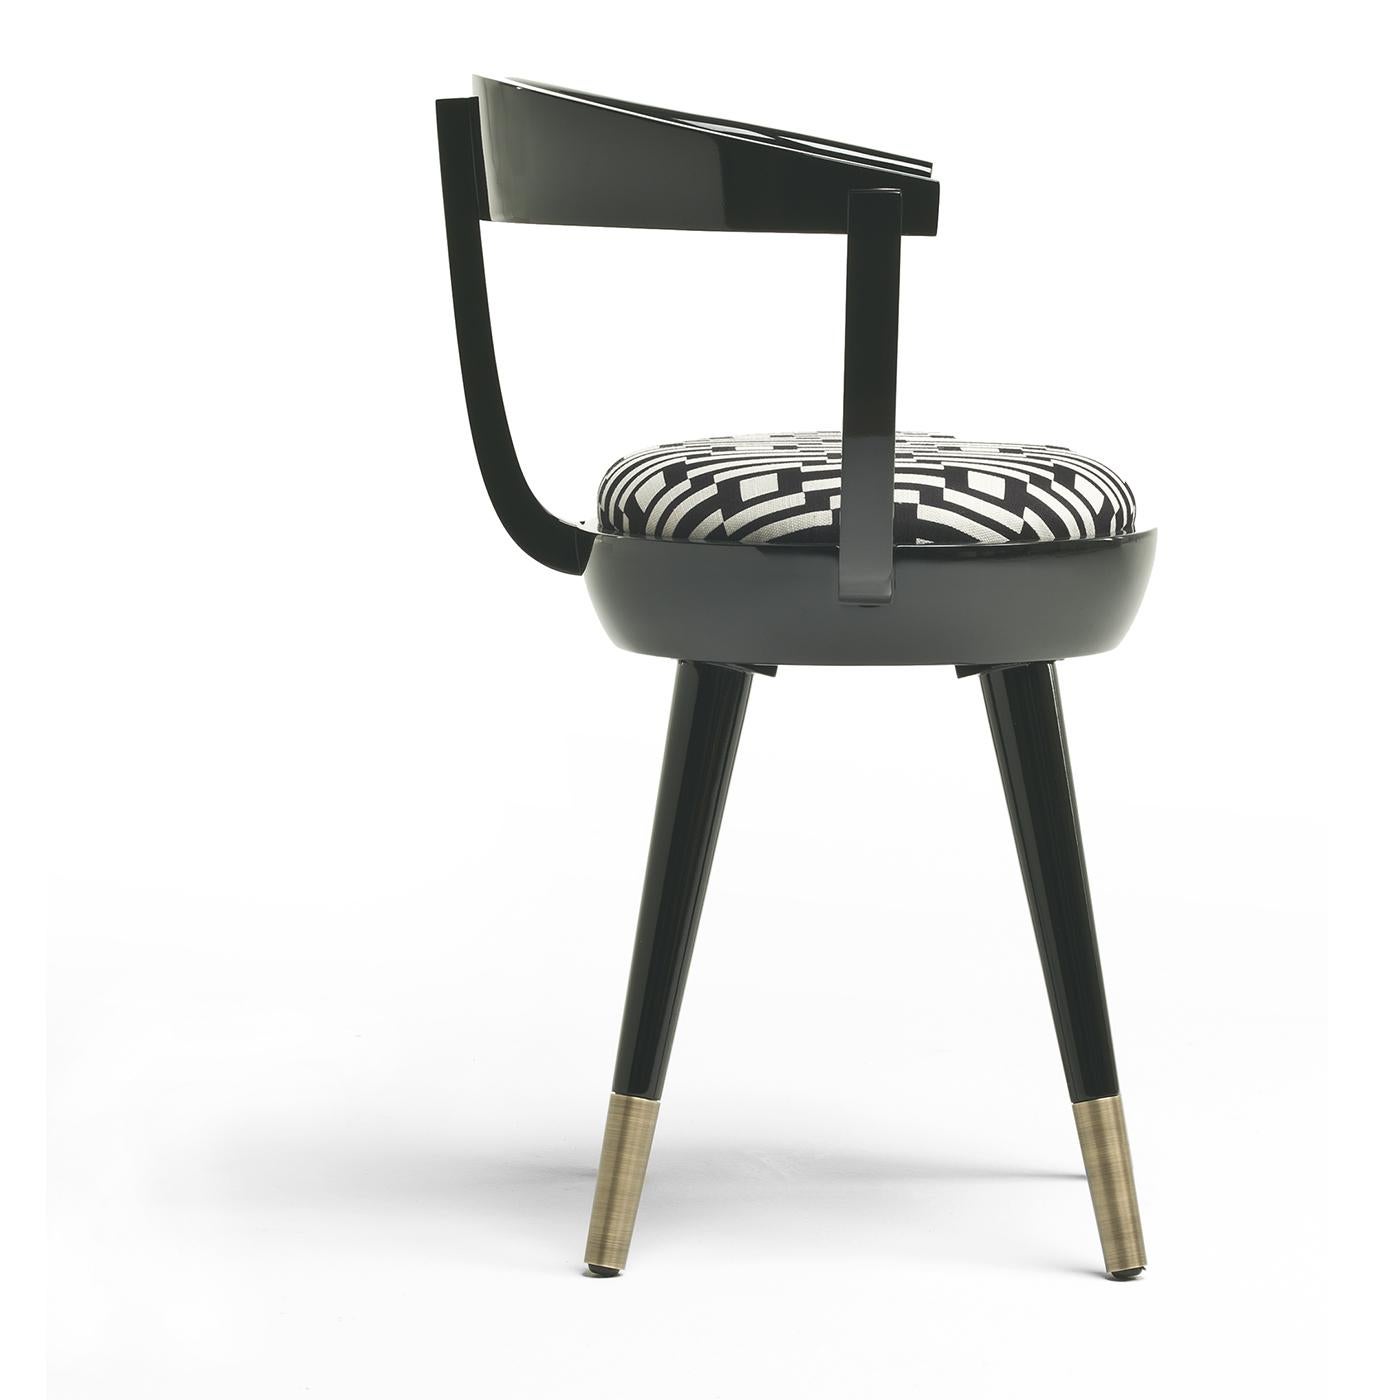 Der Galleon Chair ist ein witziges und originelles Design, das garantiert für Gesprächsstoff sorgt. Er steht auf ausgestellten, von der Mitte des Jahrhunderts inspirierten Beinen mit brünierten Messingfüßen. Der Stuhl mit der einzigartigen